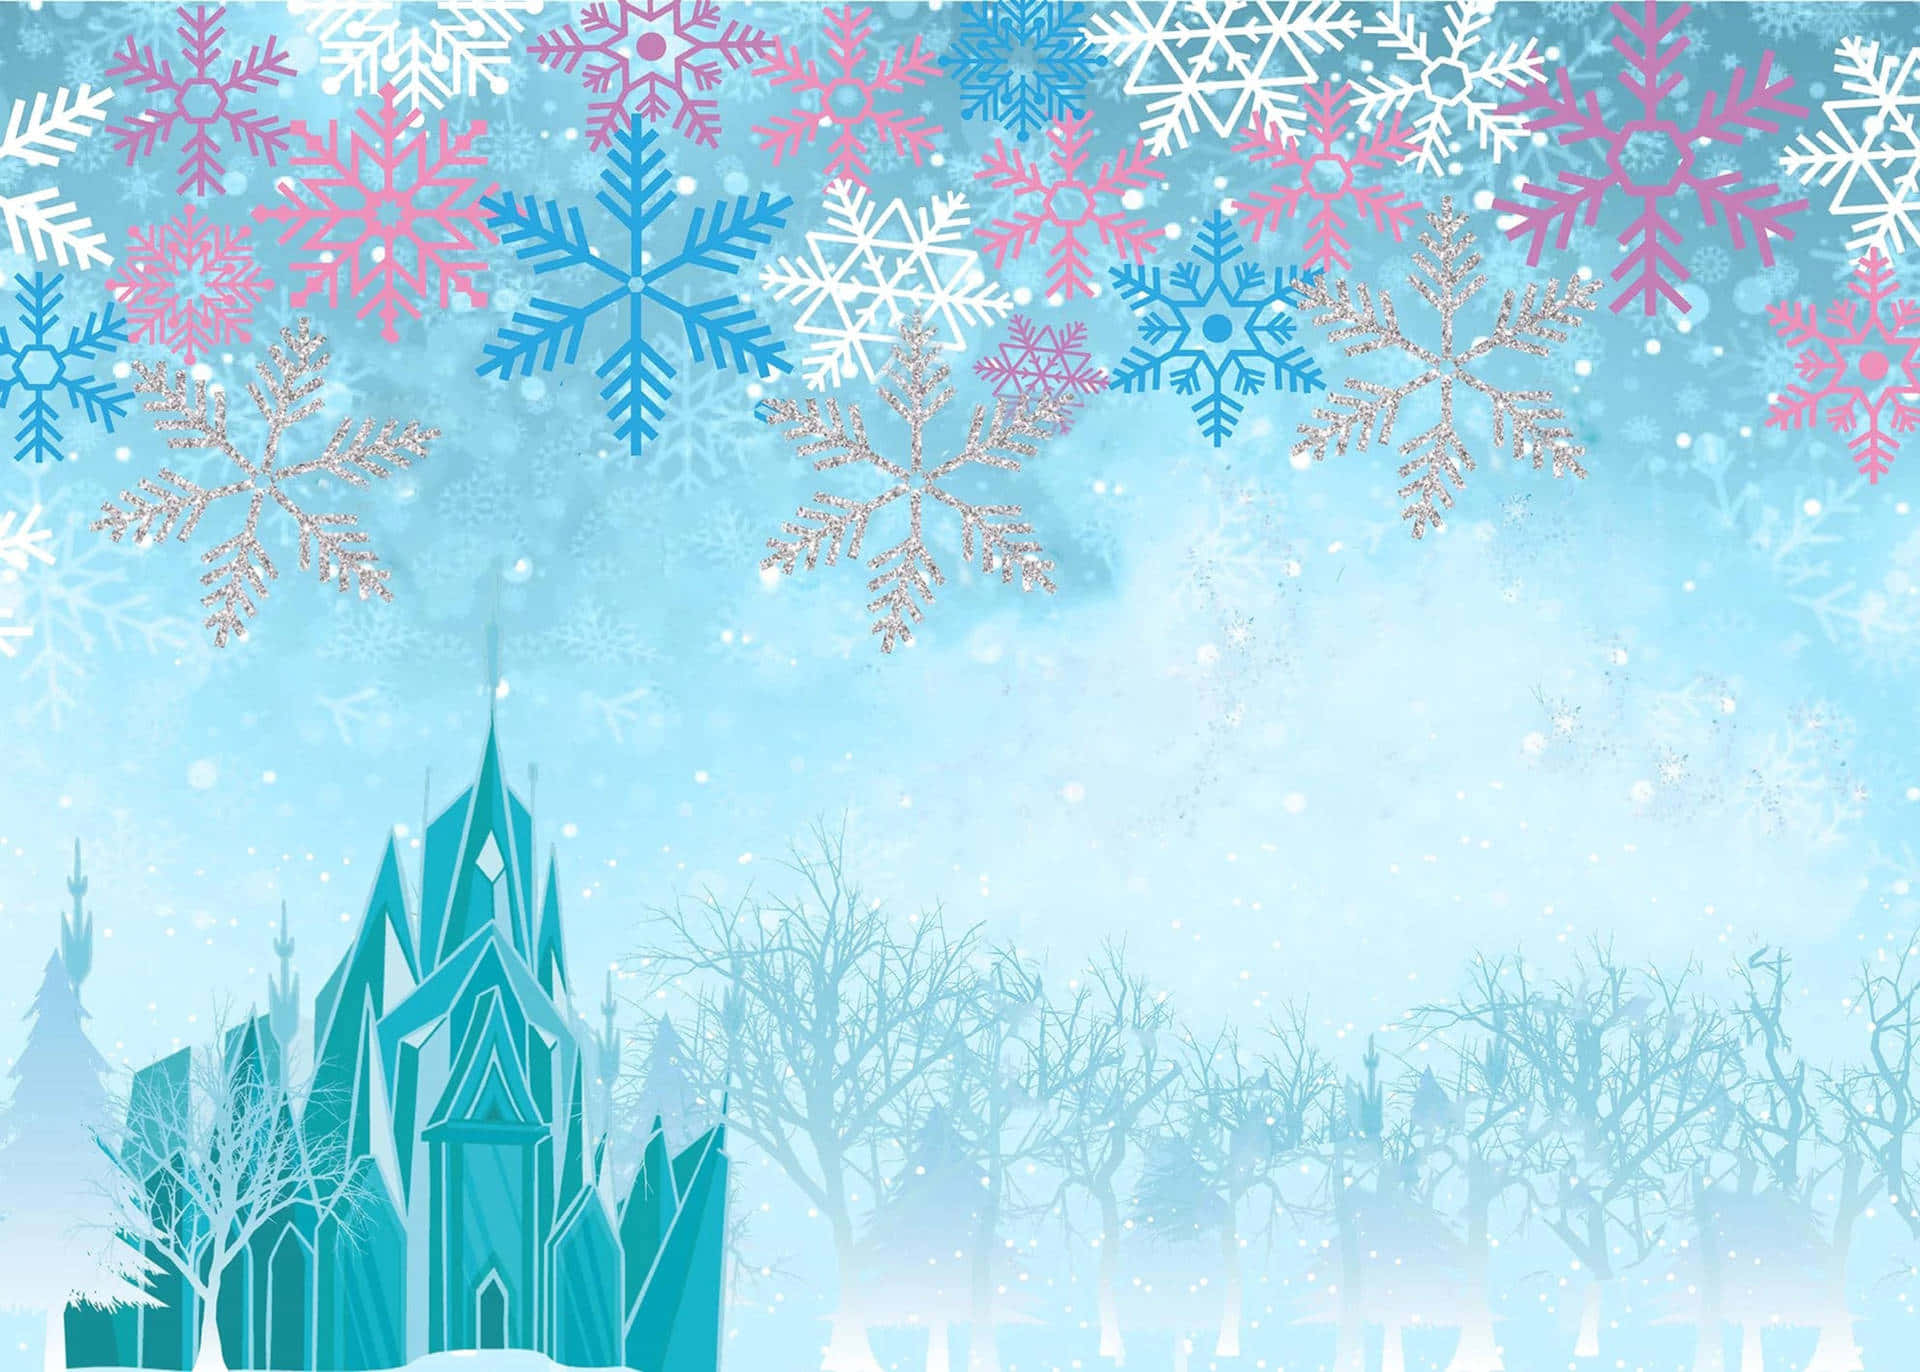 Enchanting Frozen Castle in Winter Wonderland